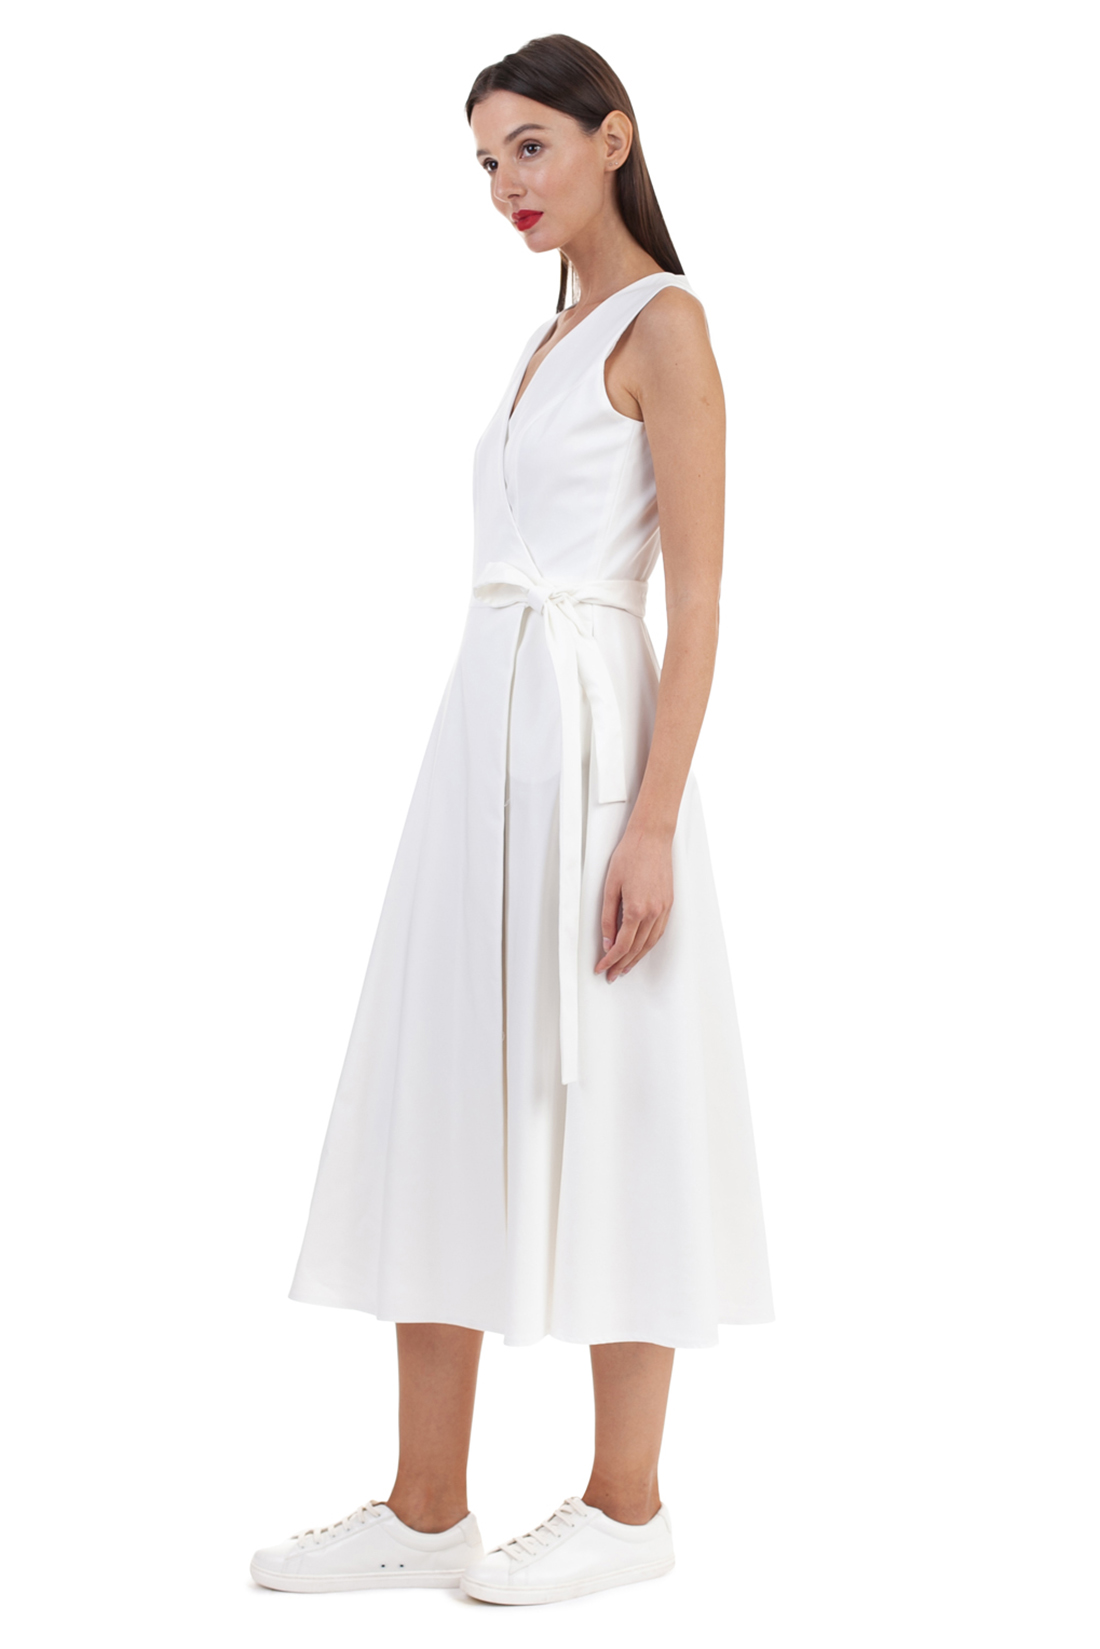 Белое платье с запахом (арт. baon B458125), размер M, цвет белый Белое платье с запахом (арт. baon B458125) - фото 4